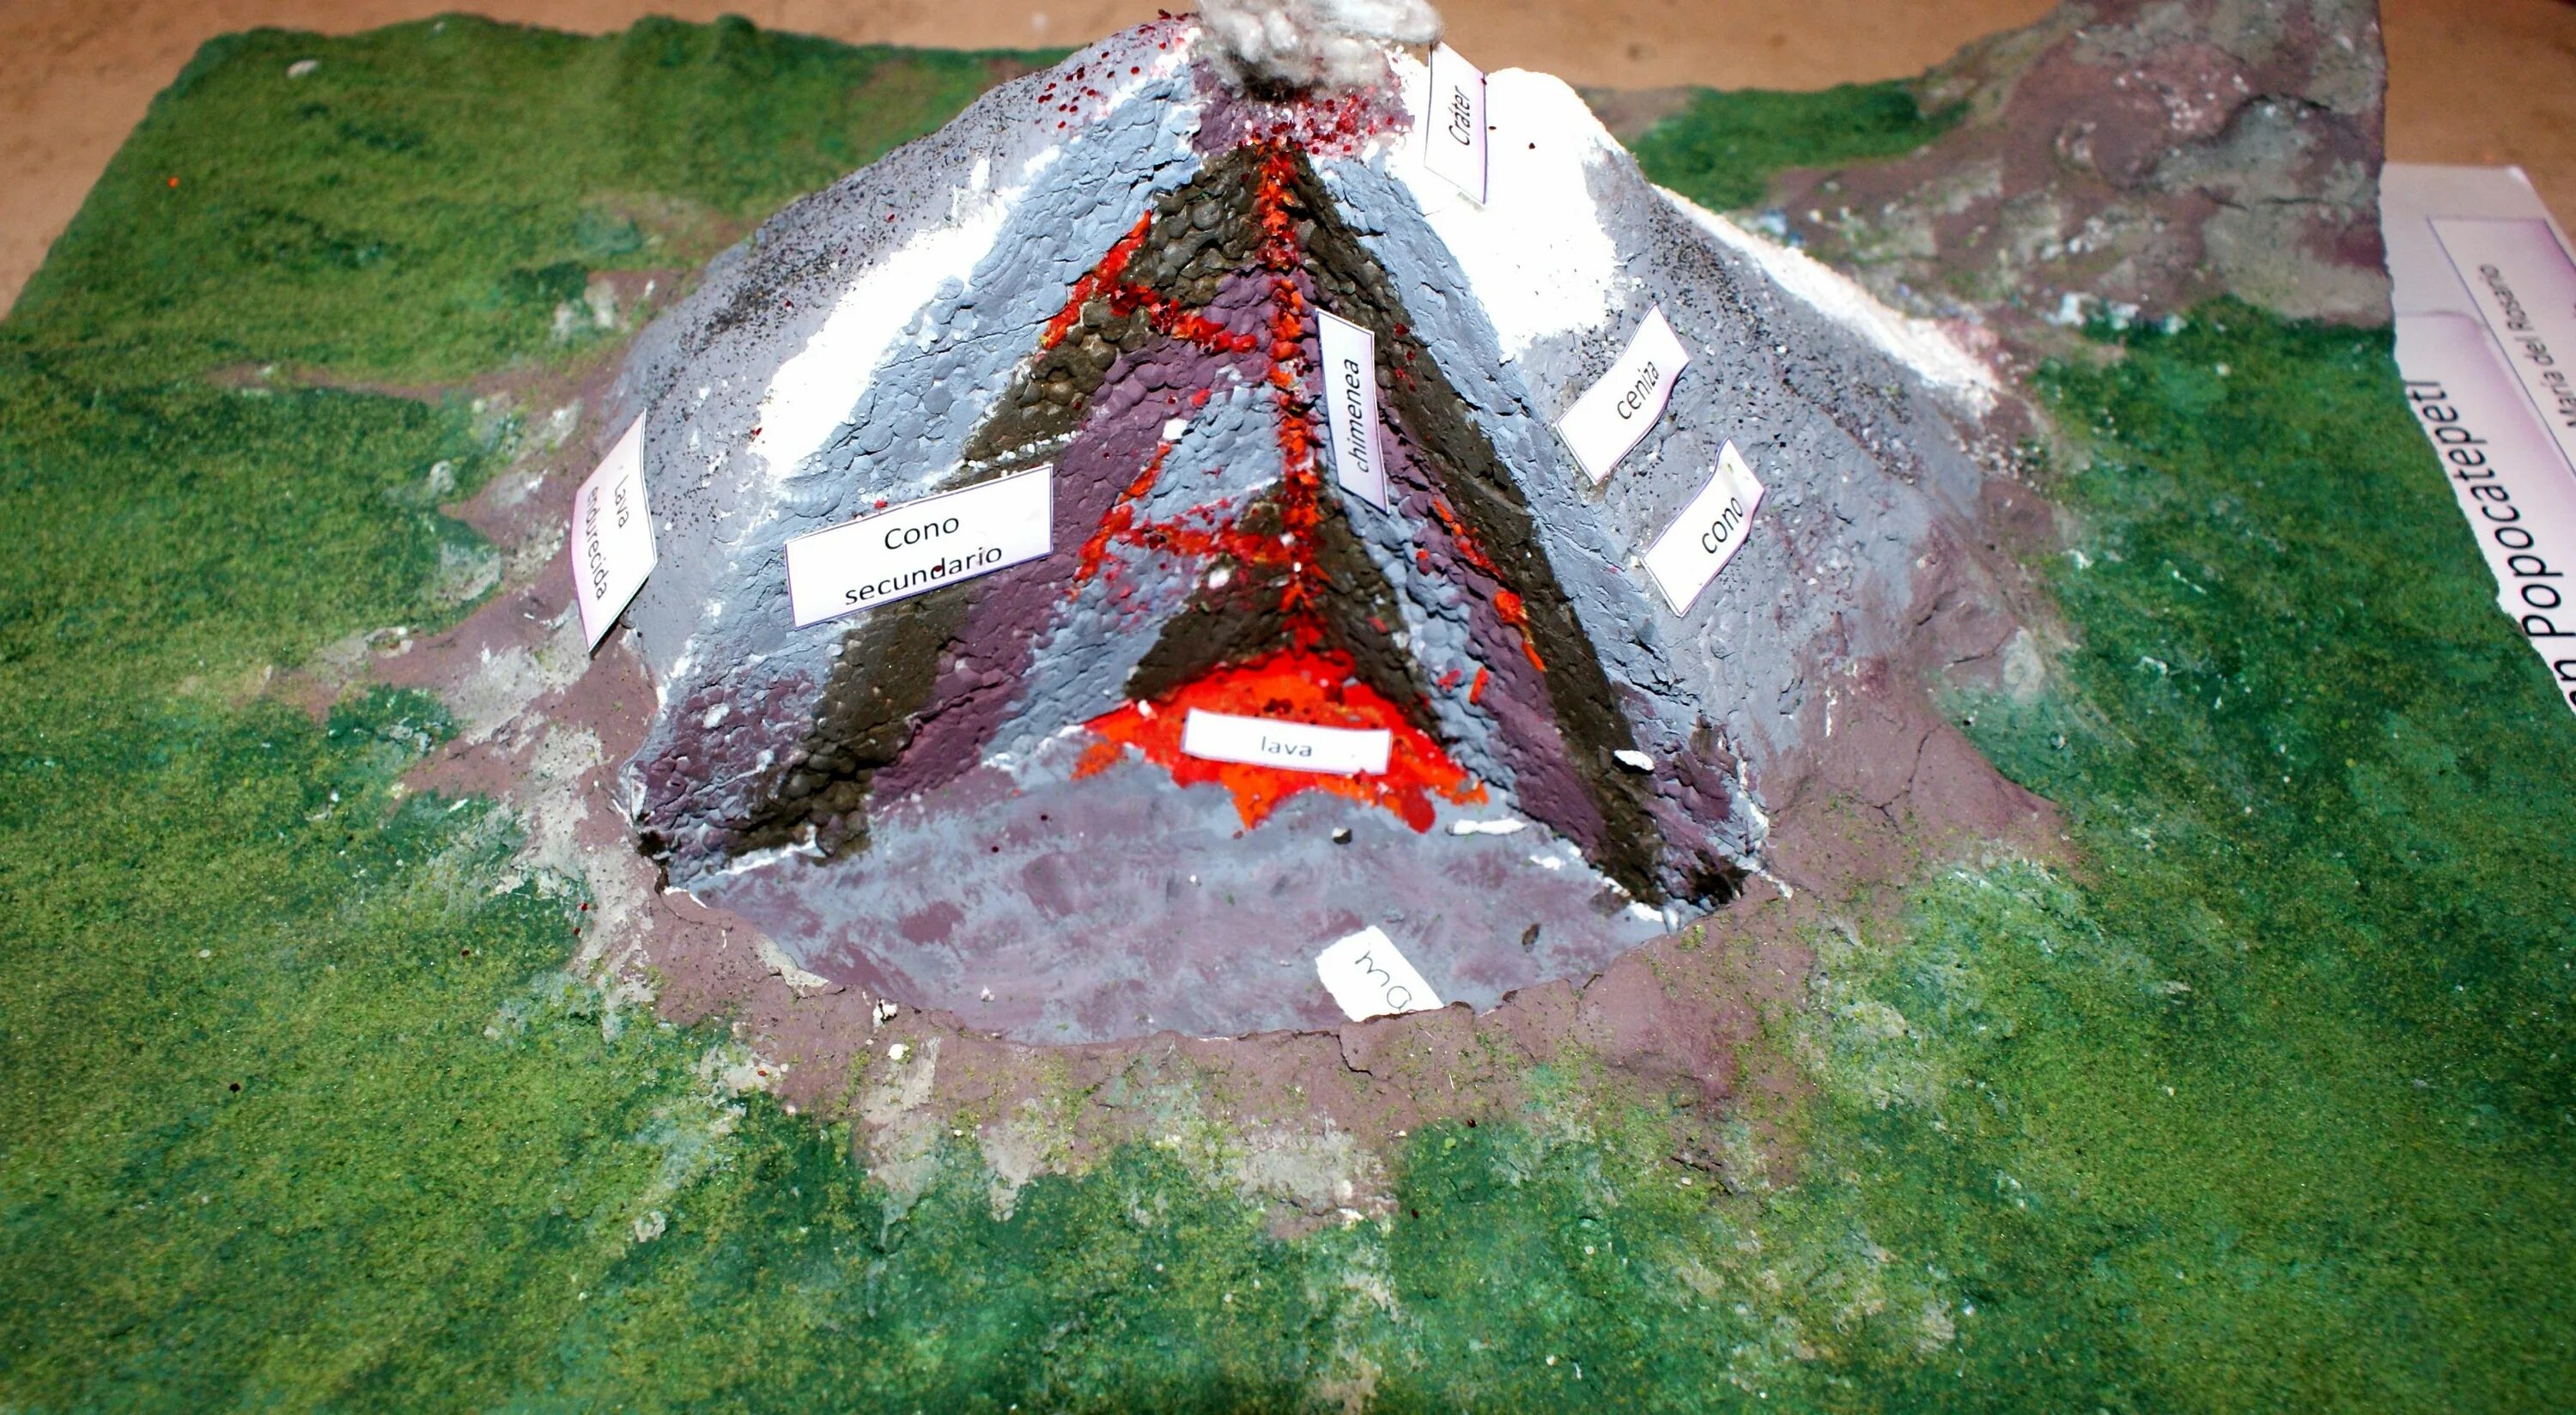 Макет вулкана в разрезе